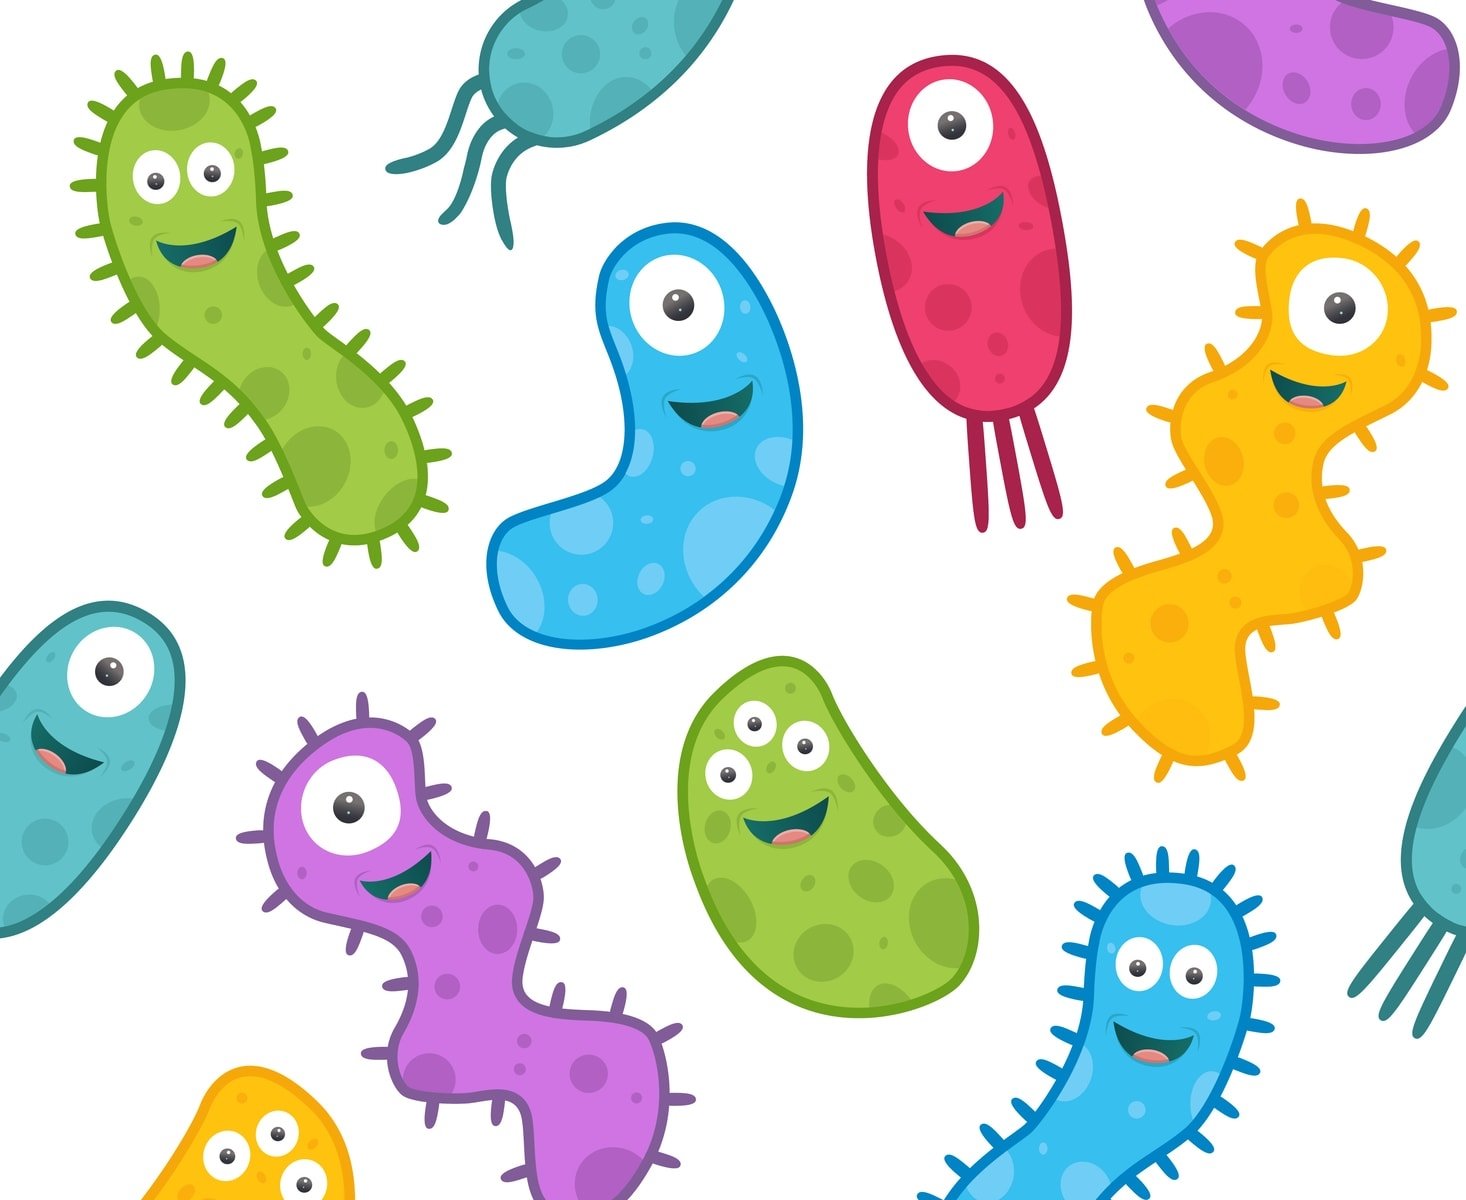 3D иллюстрации палочковидных бактерий. Реалистичные иллюстрации микробов